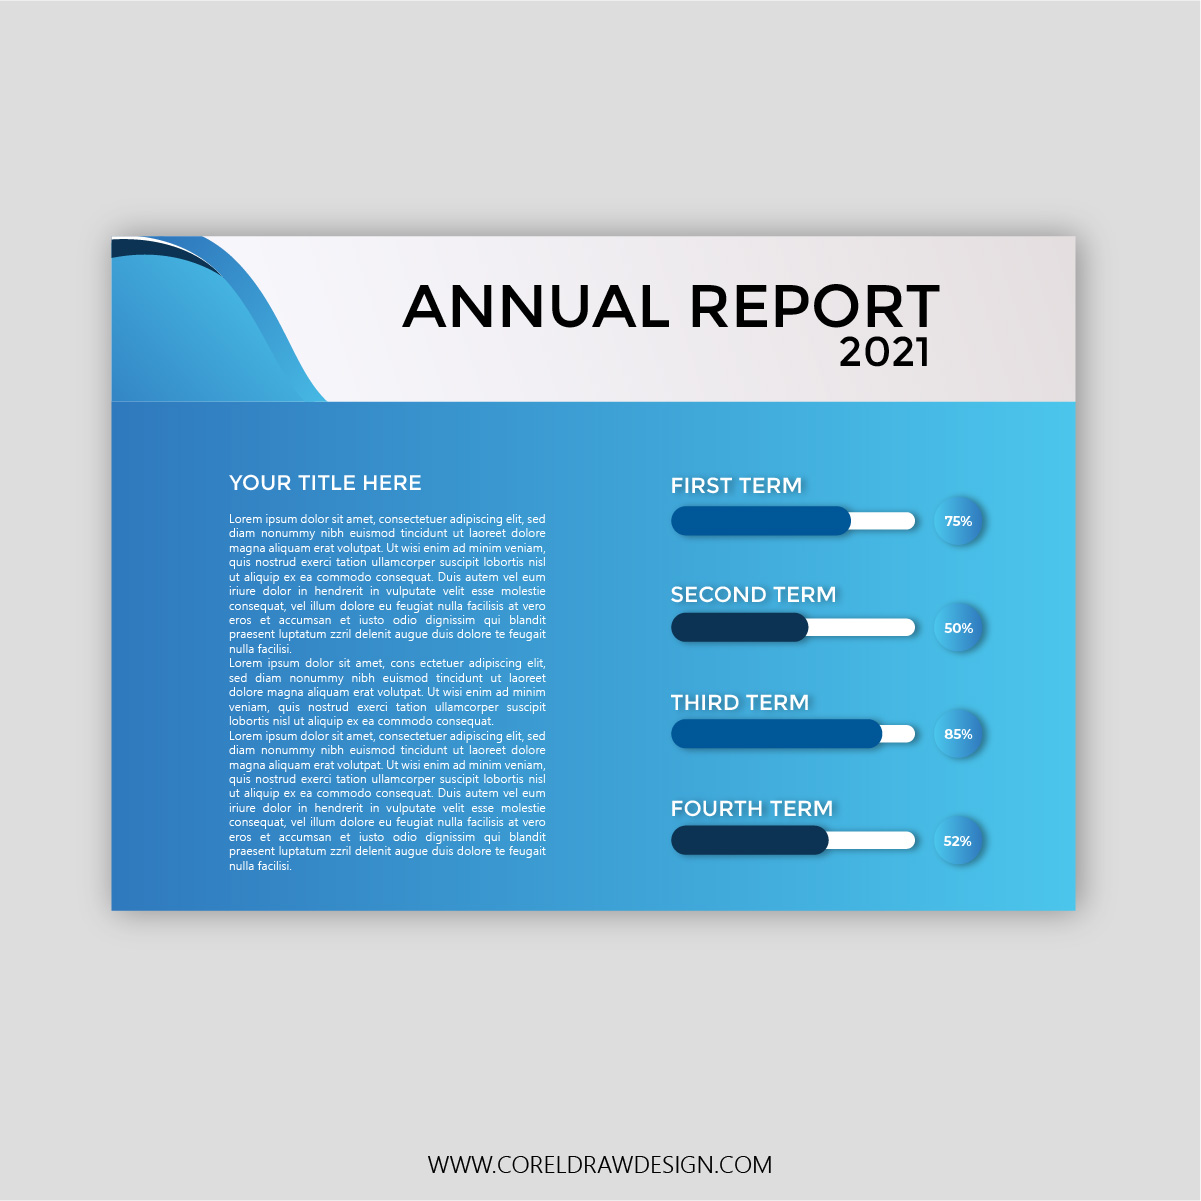 Annual Report Vector Presentation